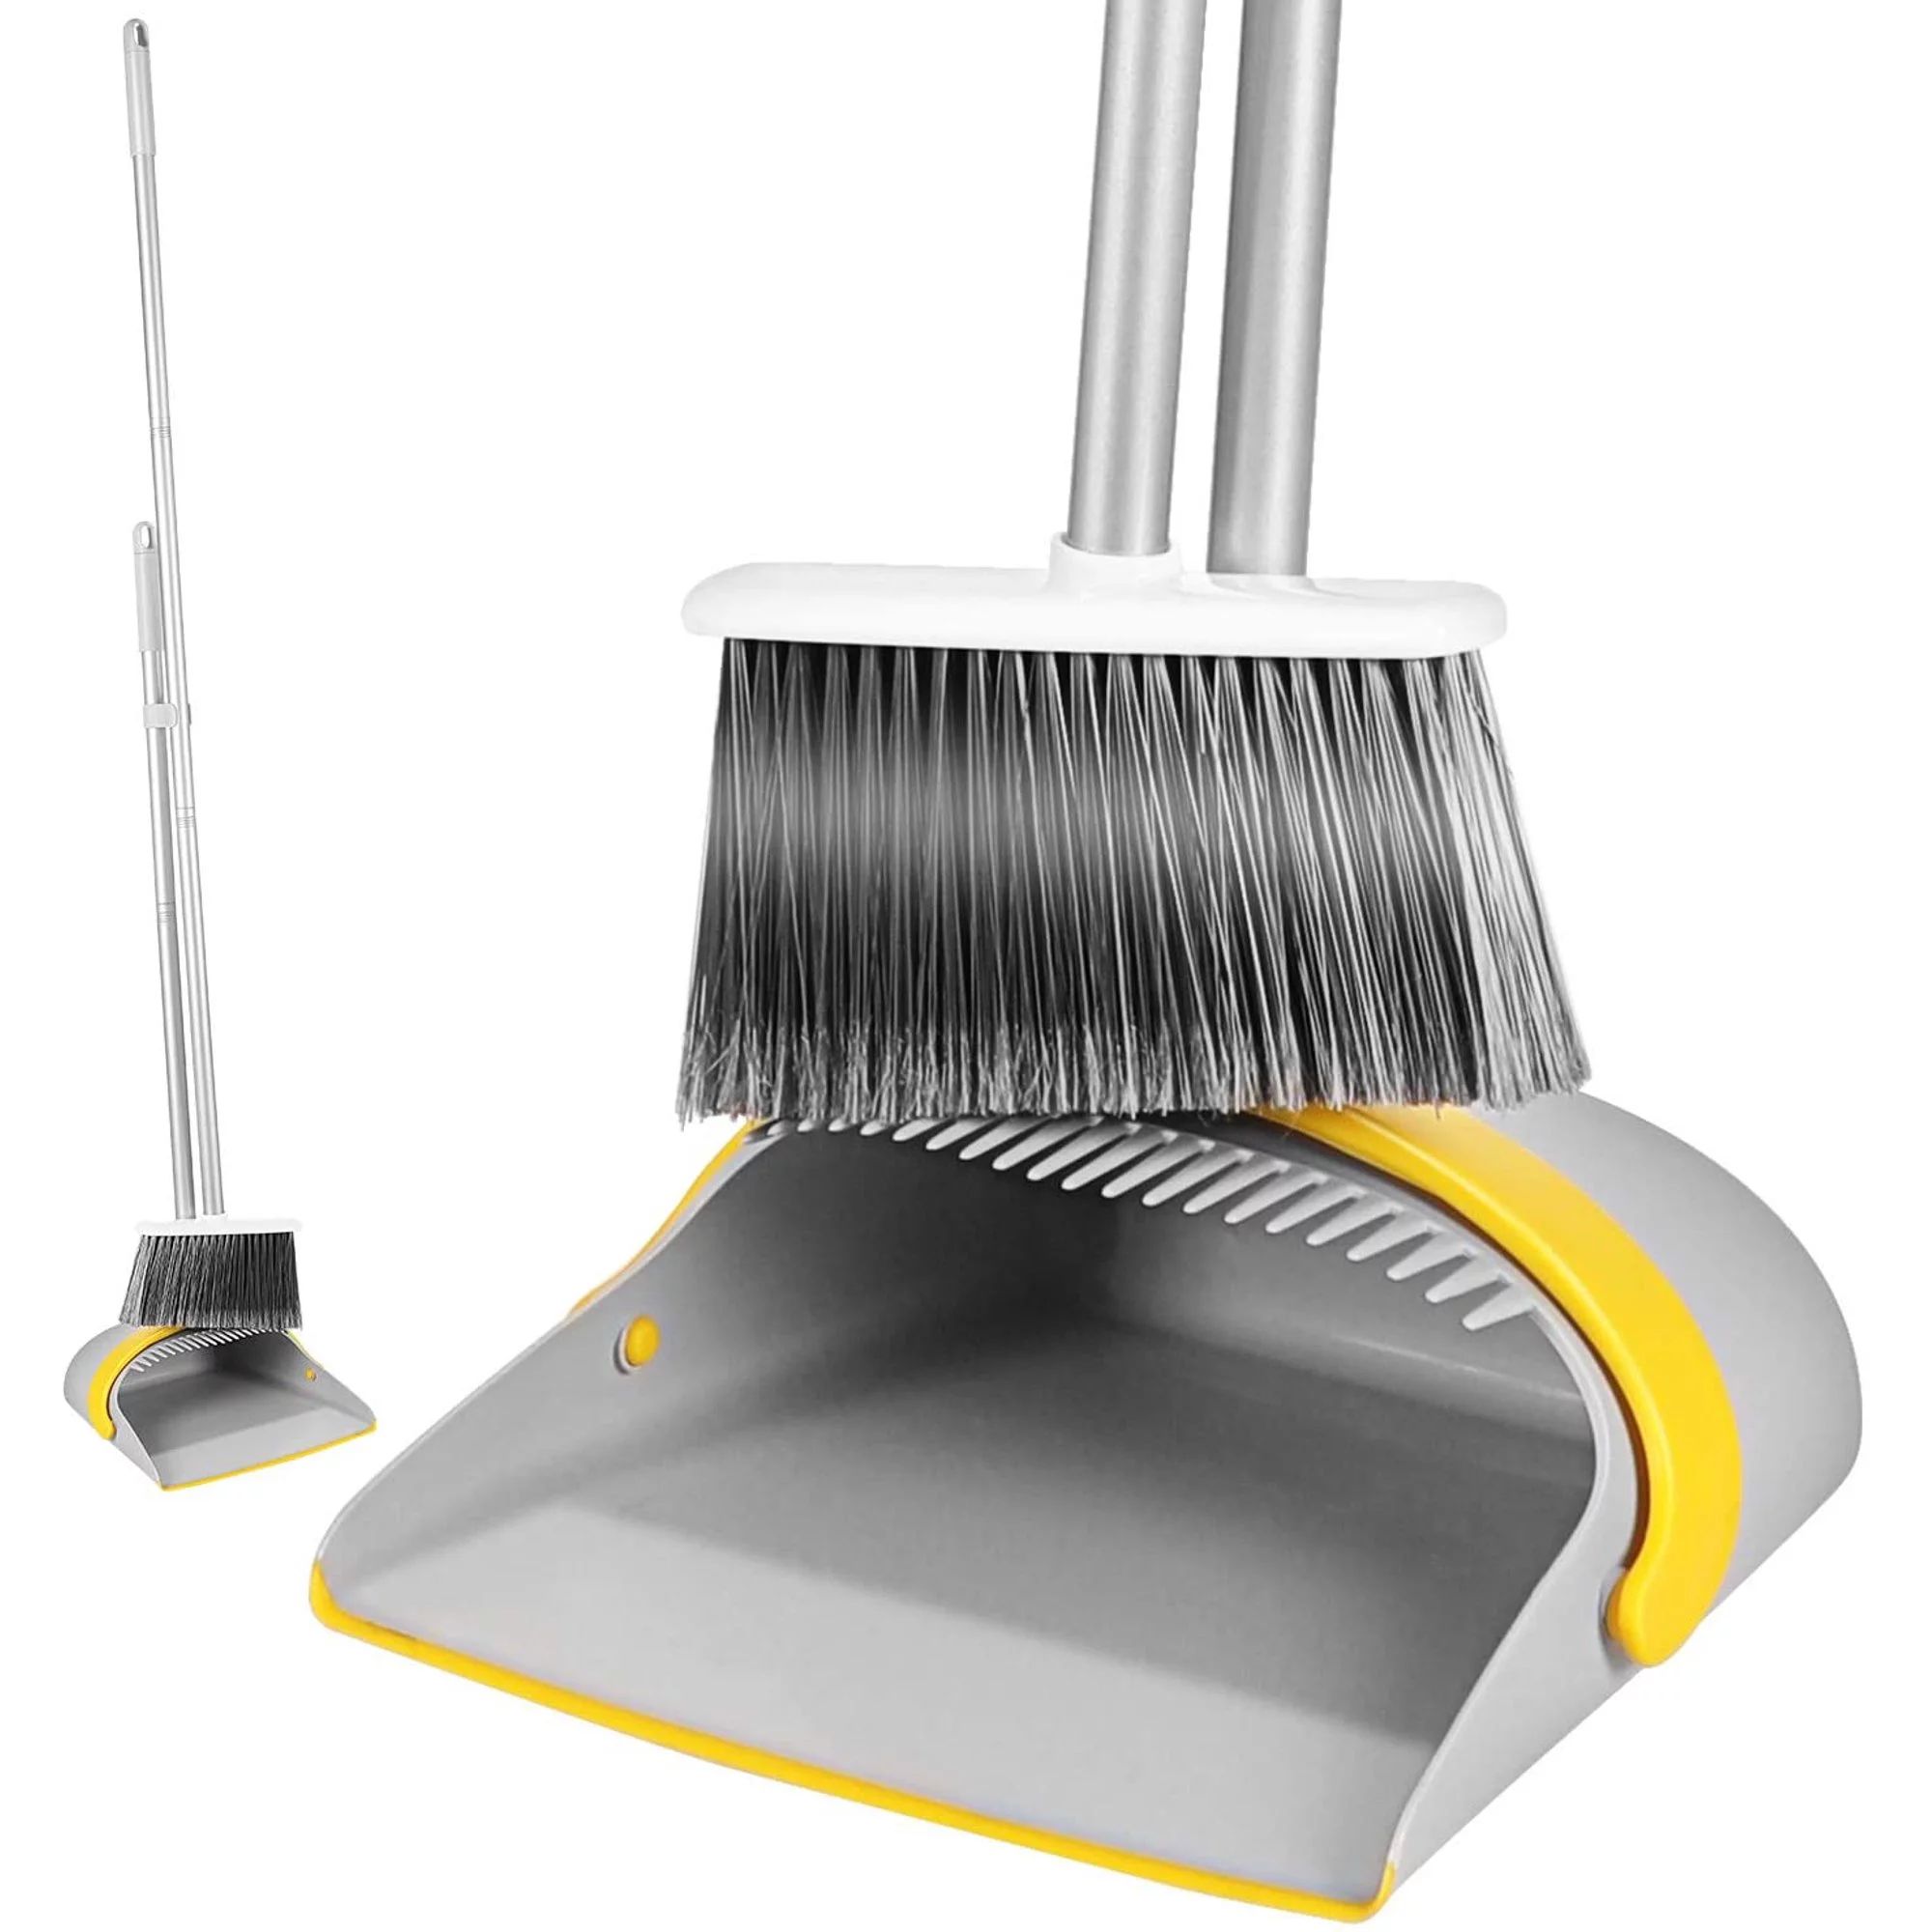 Eyliden Broom and Dustpan Set Extendable to 52" Long Handle for Home & Outdoor Floor Sweeper Upri... | Walmart (US)